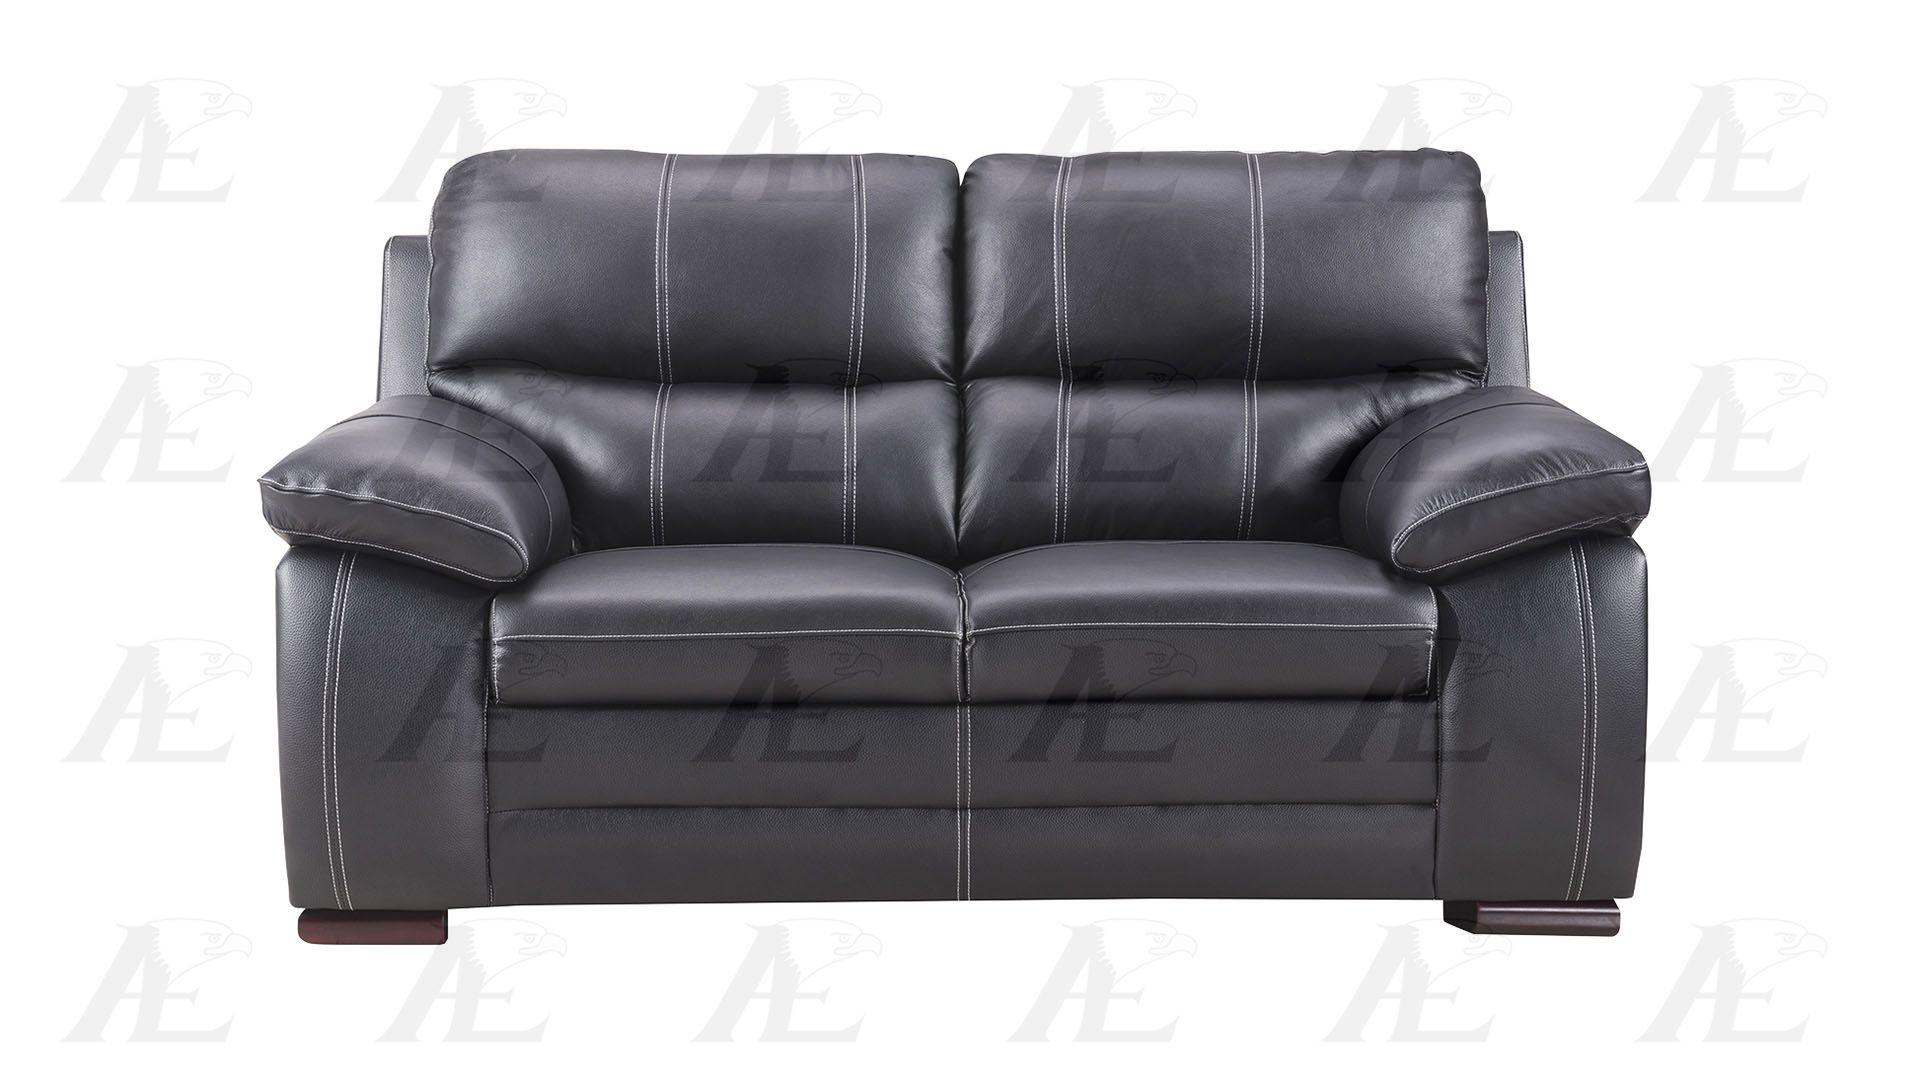 

                    
American Eagle Furniture EK-B520-B Sofa Set Black Genuine Leather Purchase 
